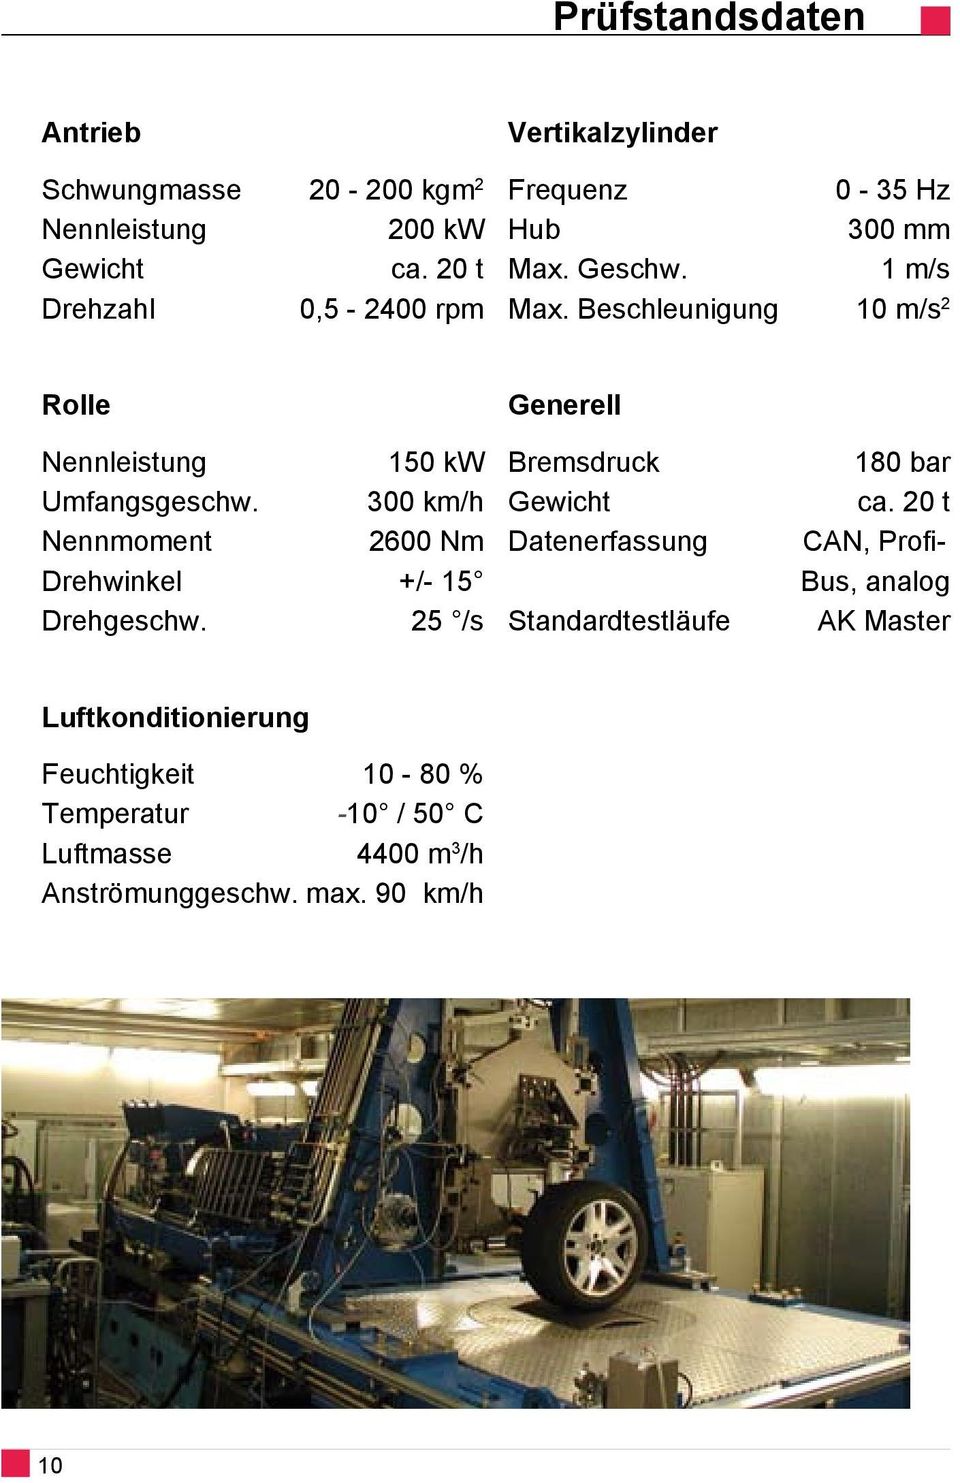 Beschleunigung 10 m/s 2 Rolle Generell Nennleistung 150 kw Umfangsgeschw. 300 km/h Nennmoment 600 Nm Drehwinkel +/- 15 Drehgeschw.